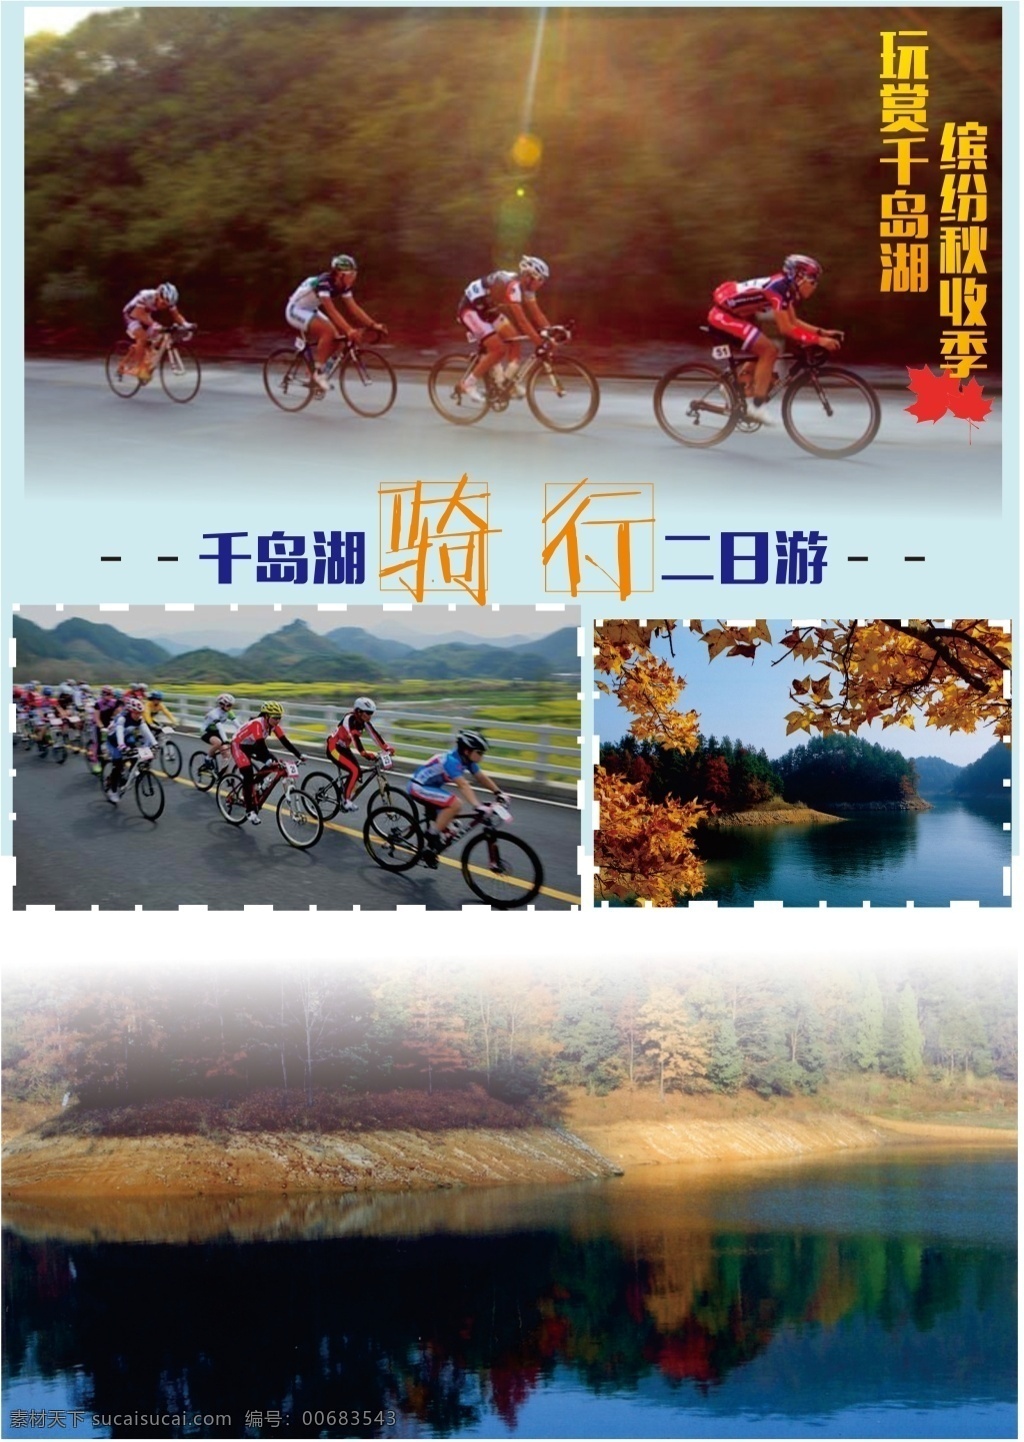 千岛湖 骑 行 旅游 海报 宣传页 骑行 黑色